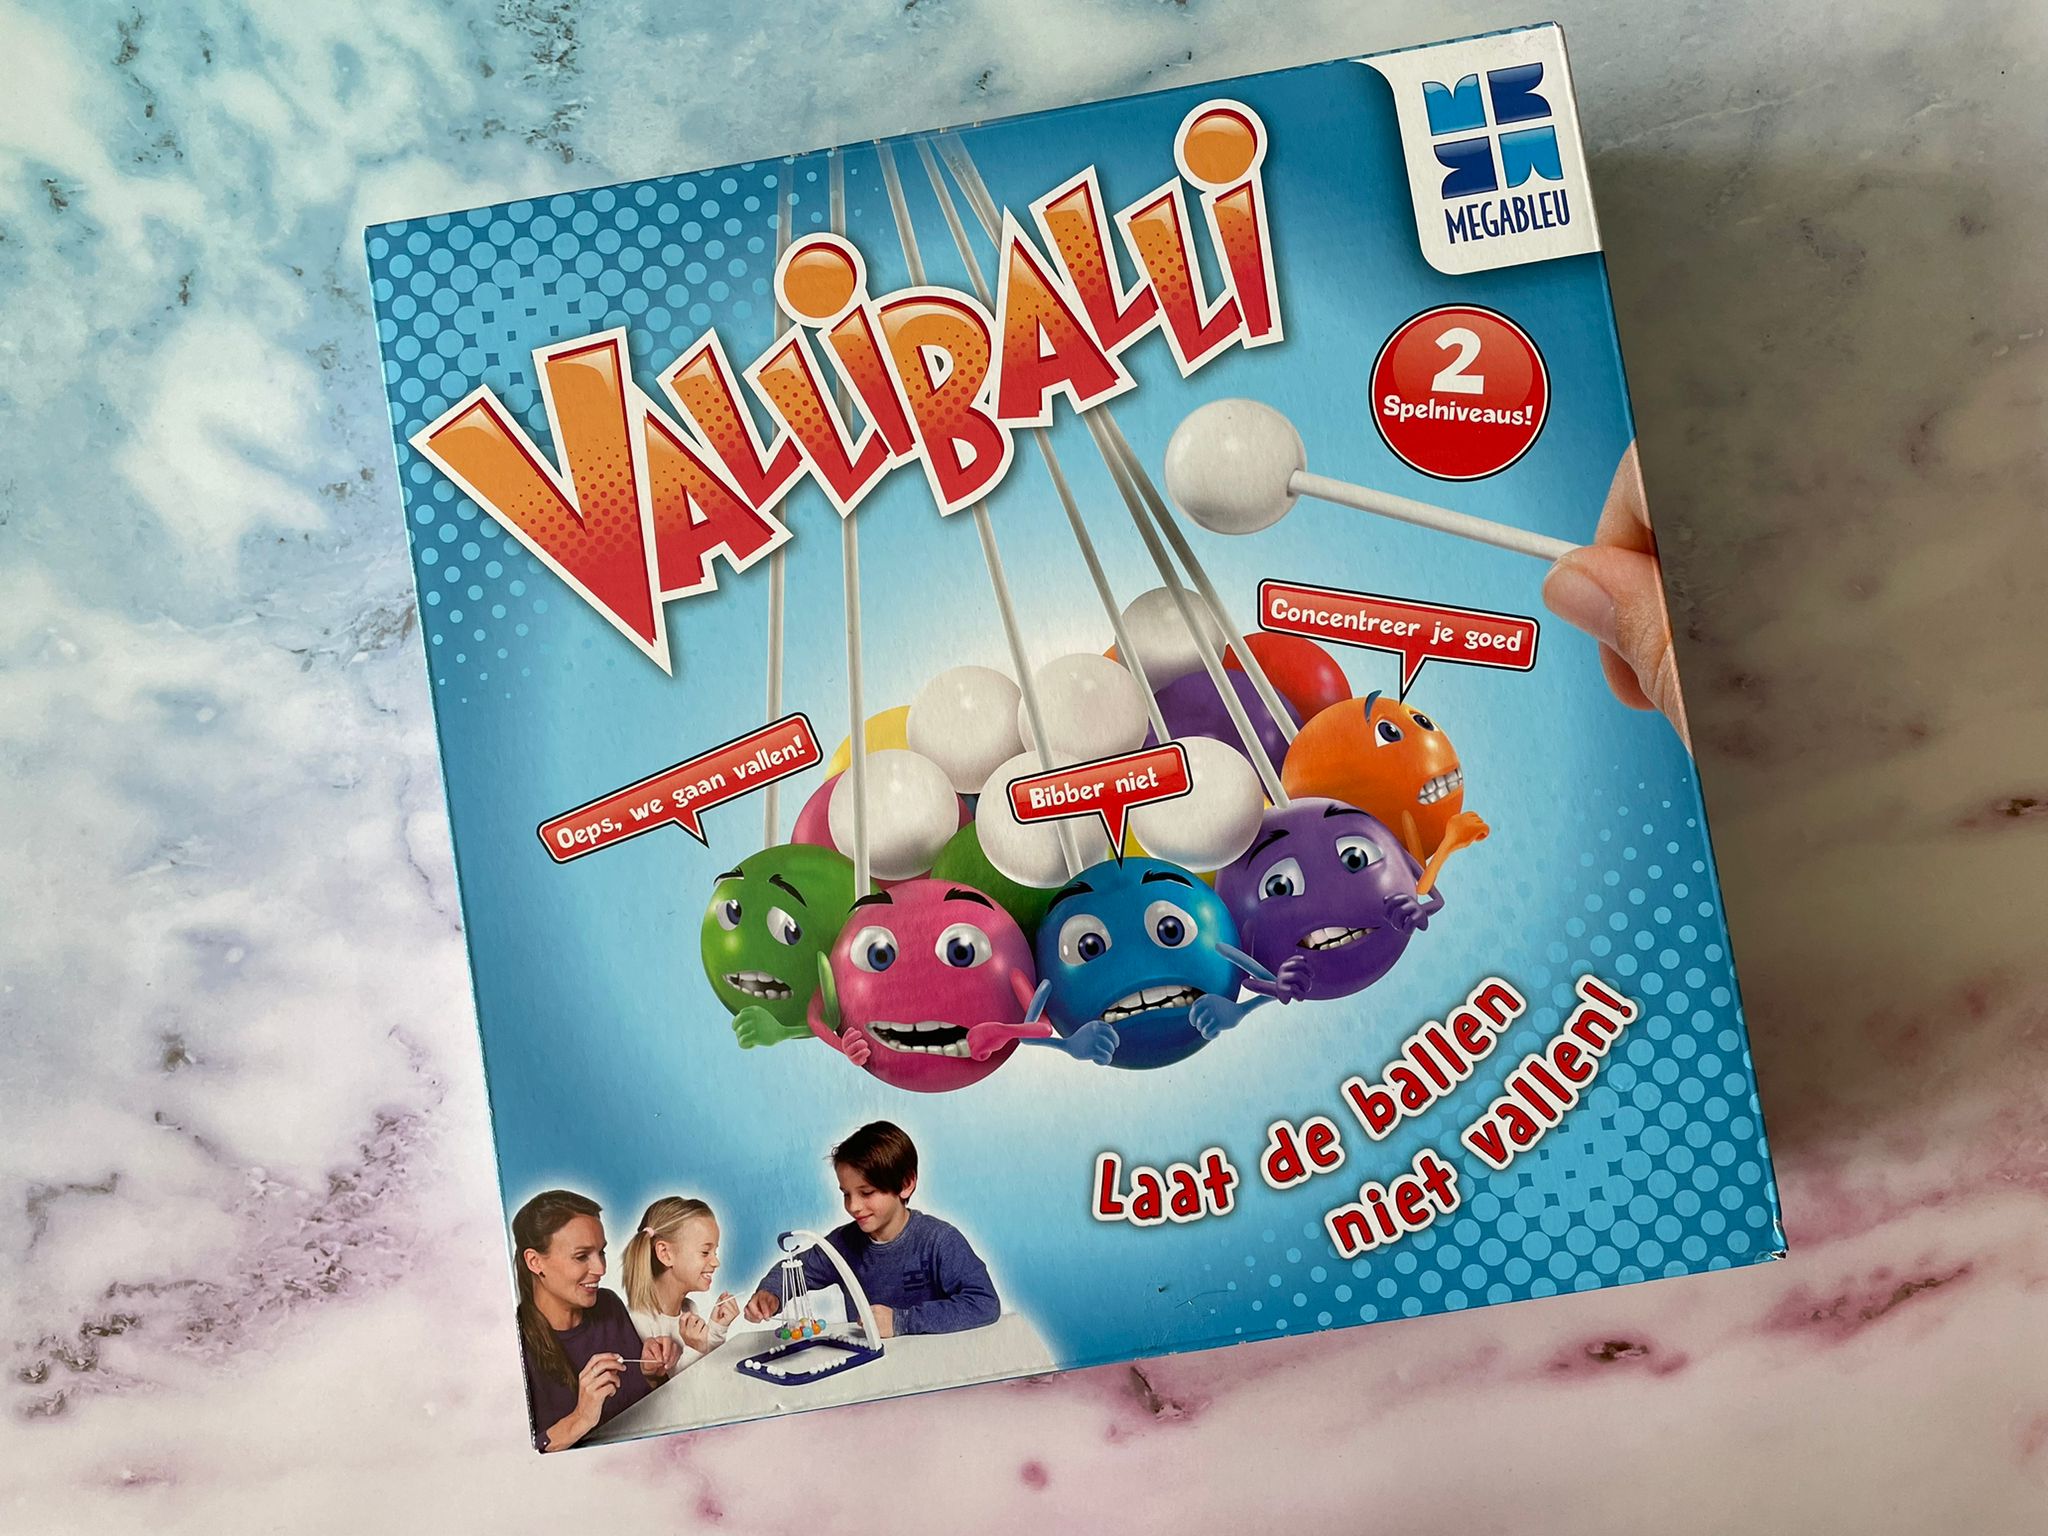 Omgeving lokaal poll Valliballi - een spel met vallende ballen -